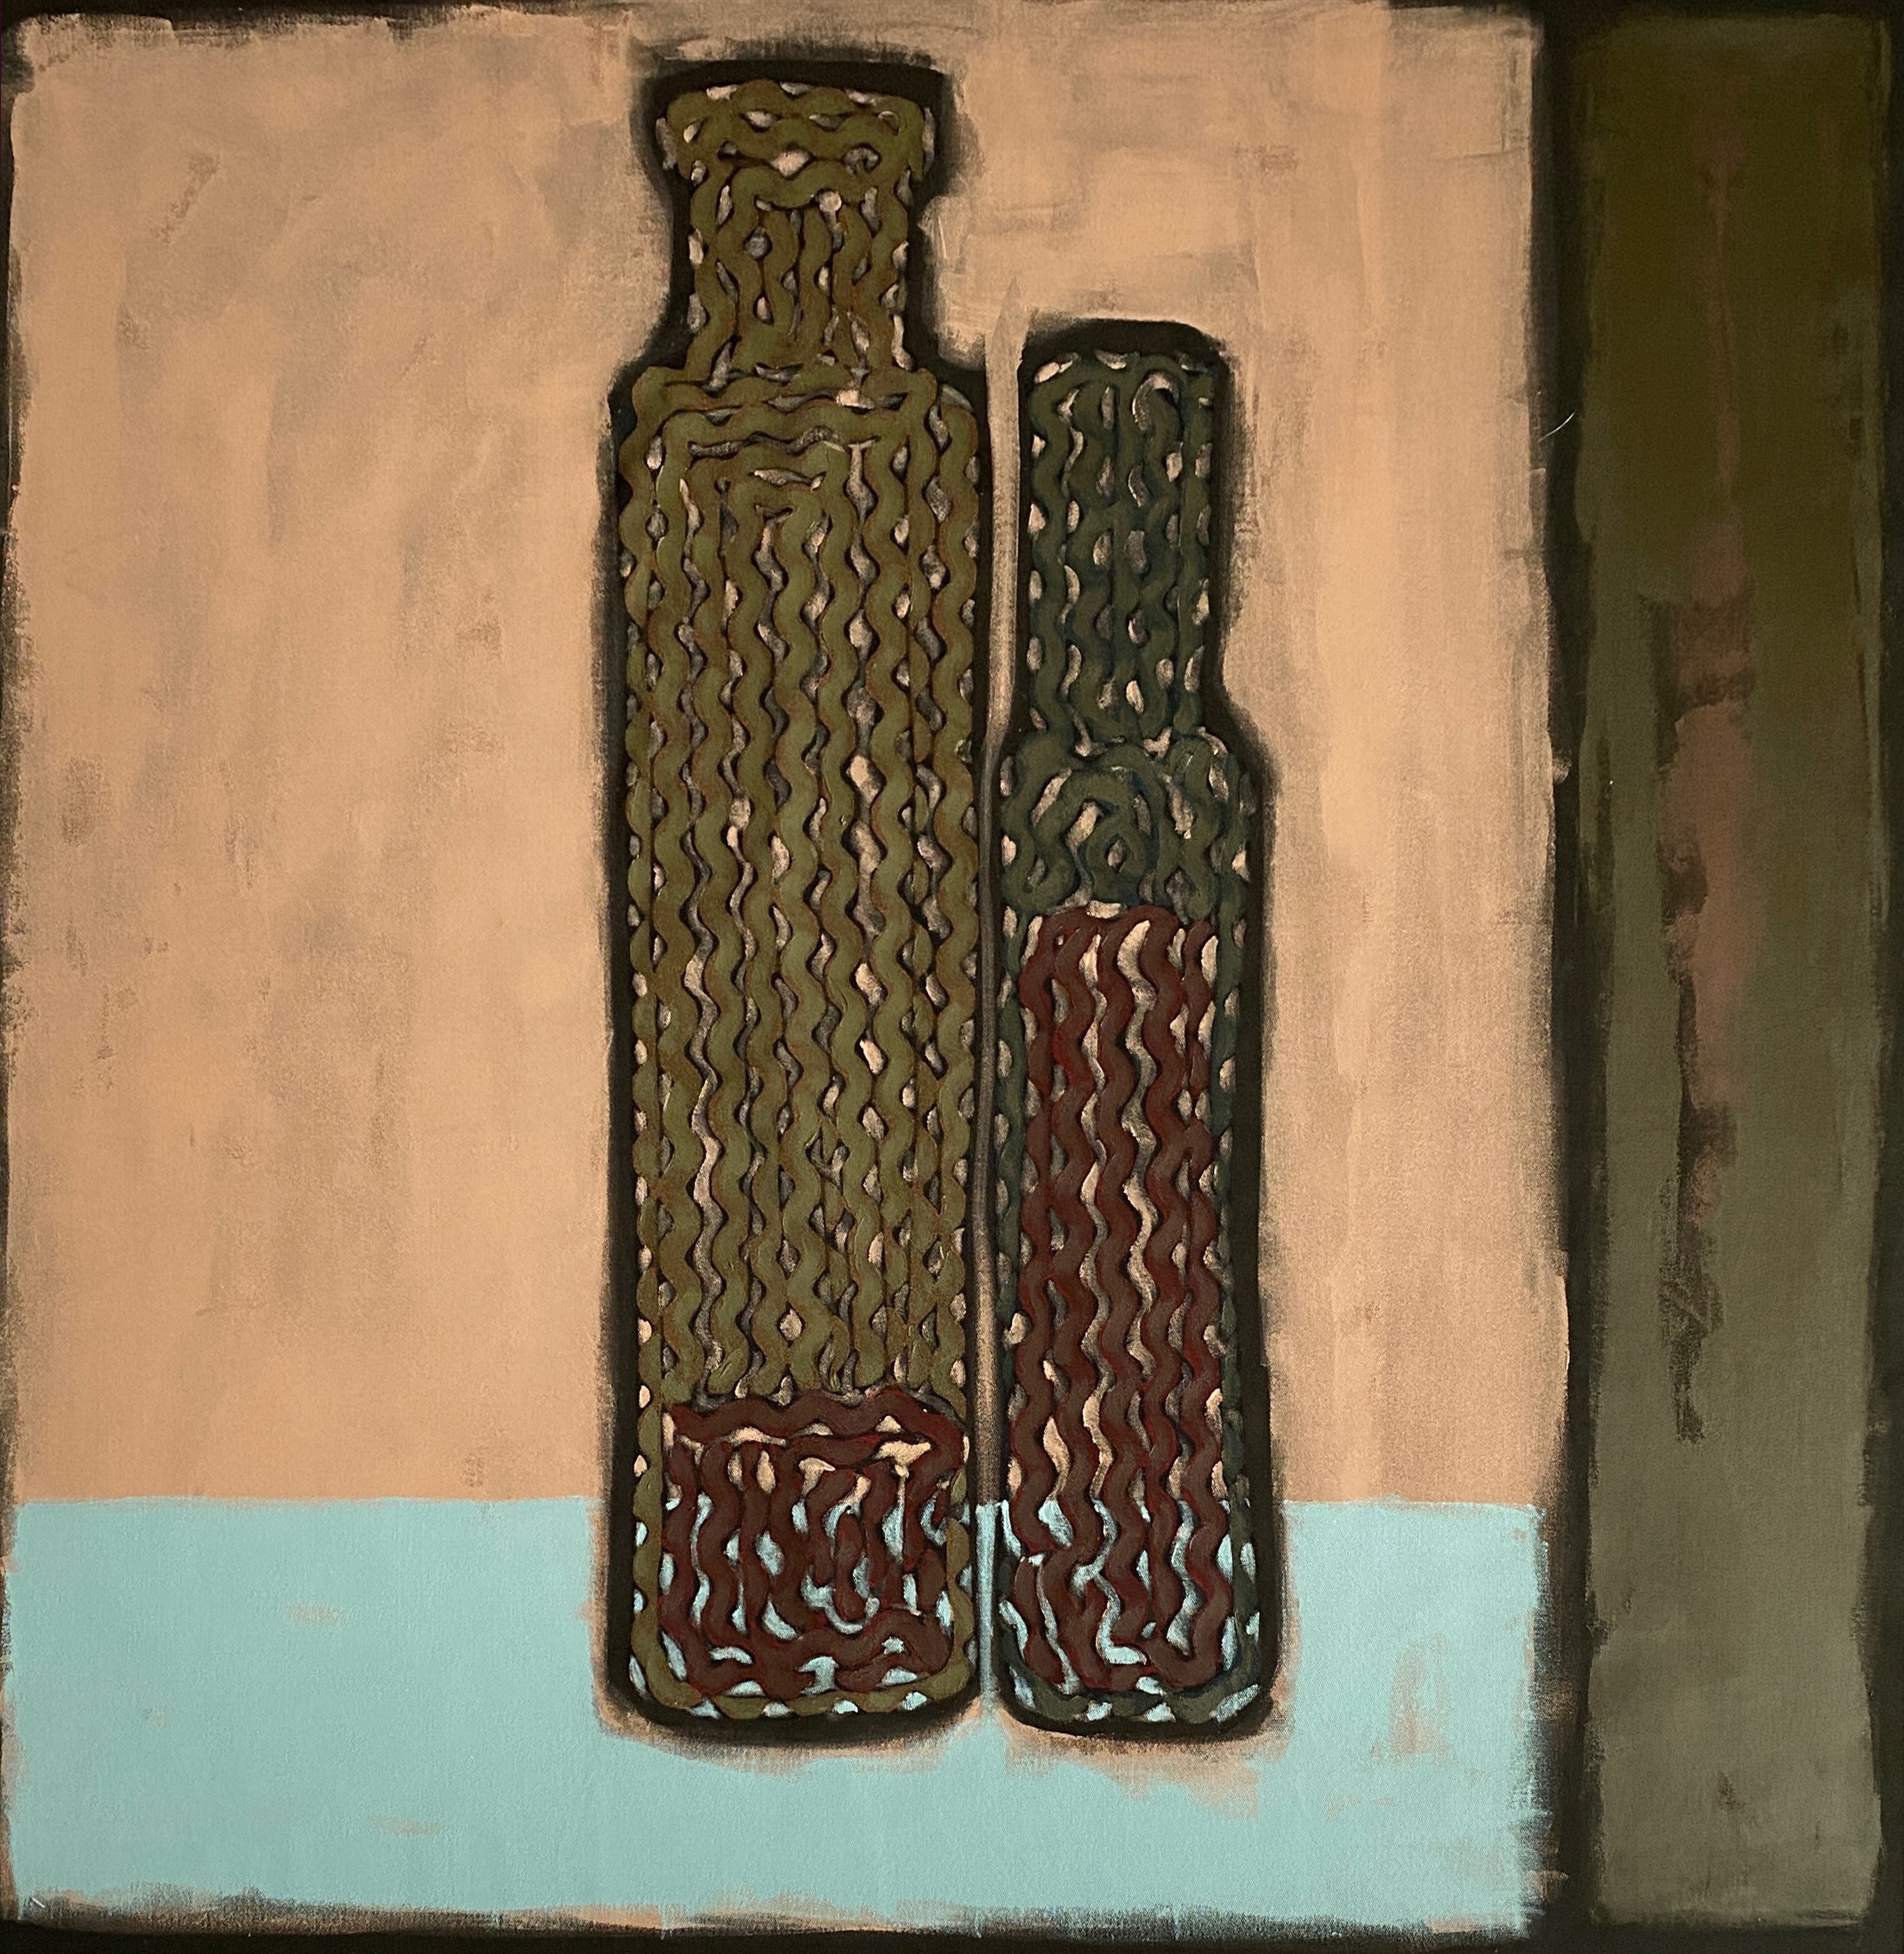 Galerie Barbara Thumm \ Diango Hernández: Botellas (DHe-21-019) \ Botellas (2021)